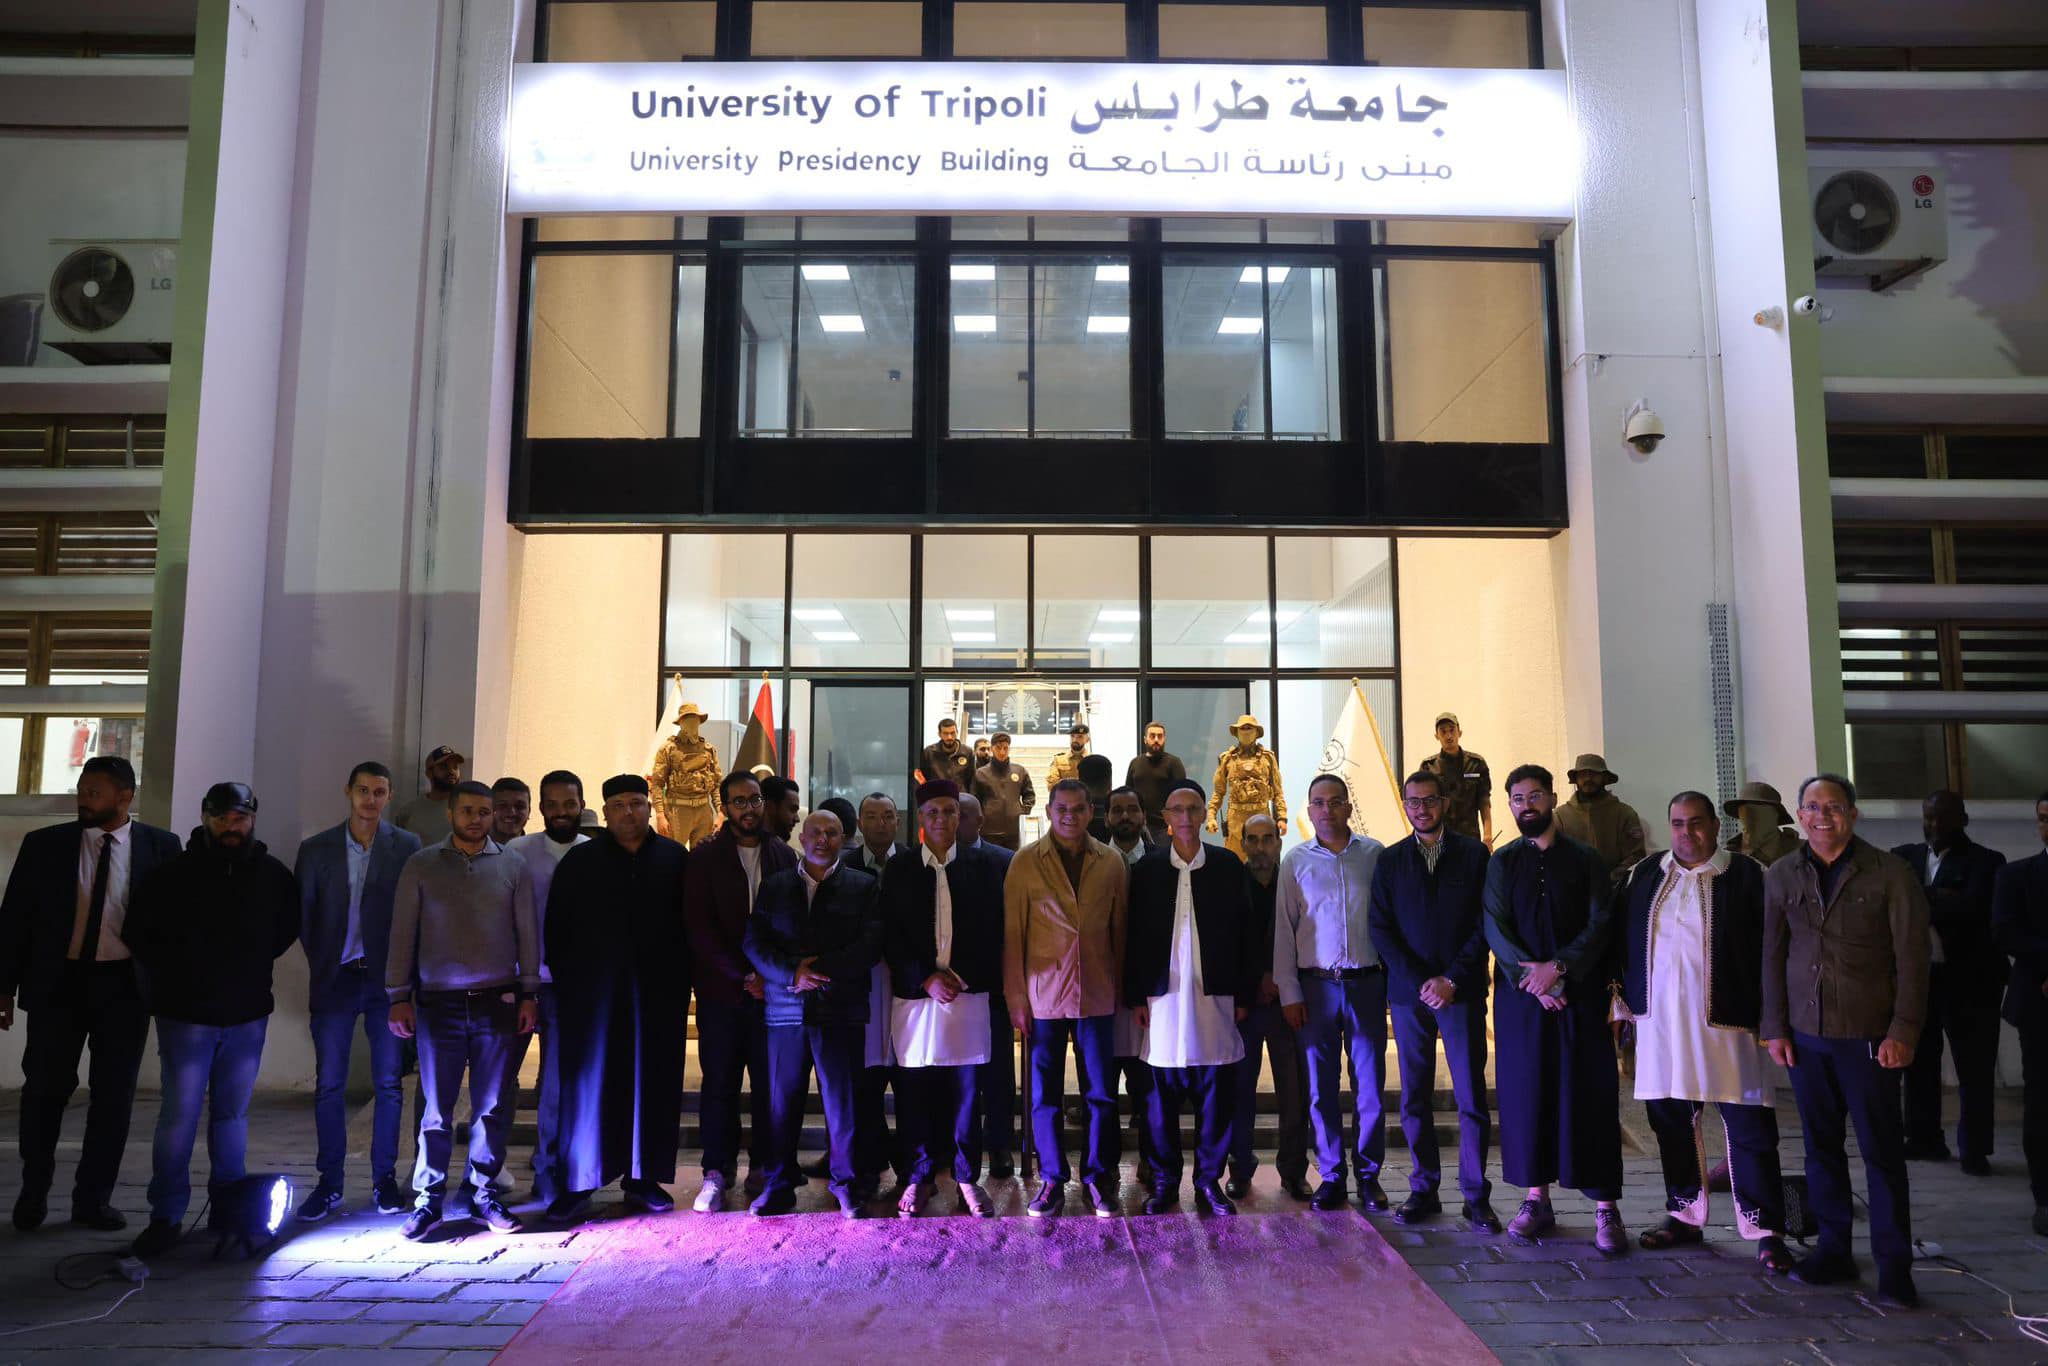  الدبيبة يفتتح مبنى رئاسة جامعة طرابلس بعد صيانته وتطويره. 